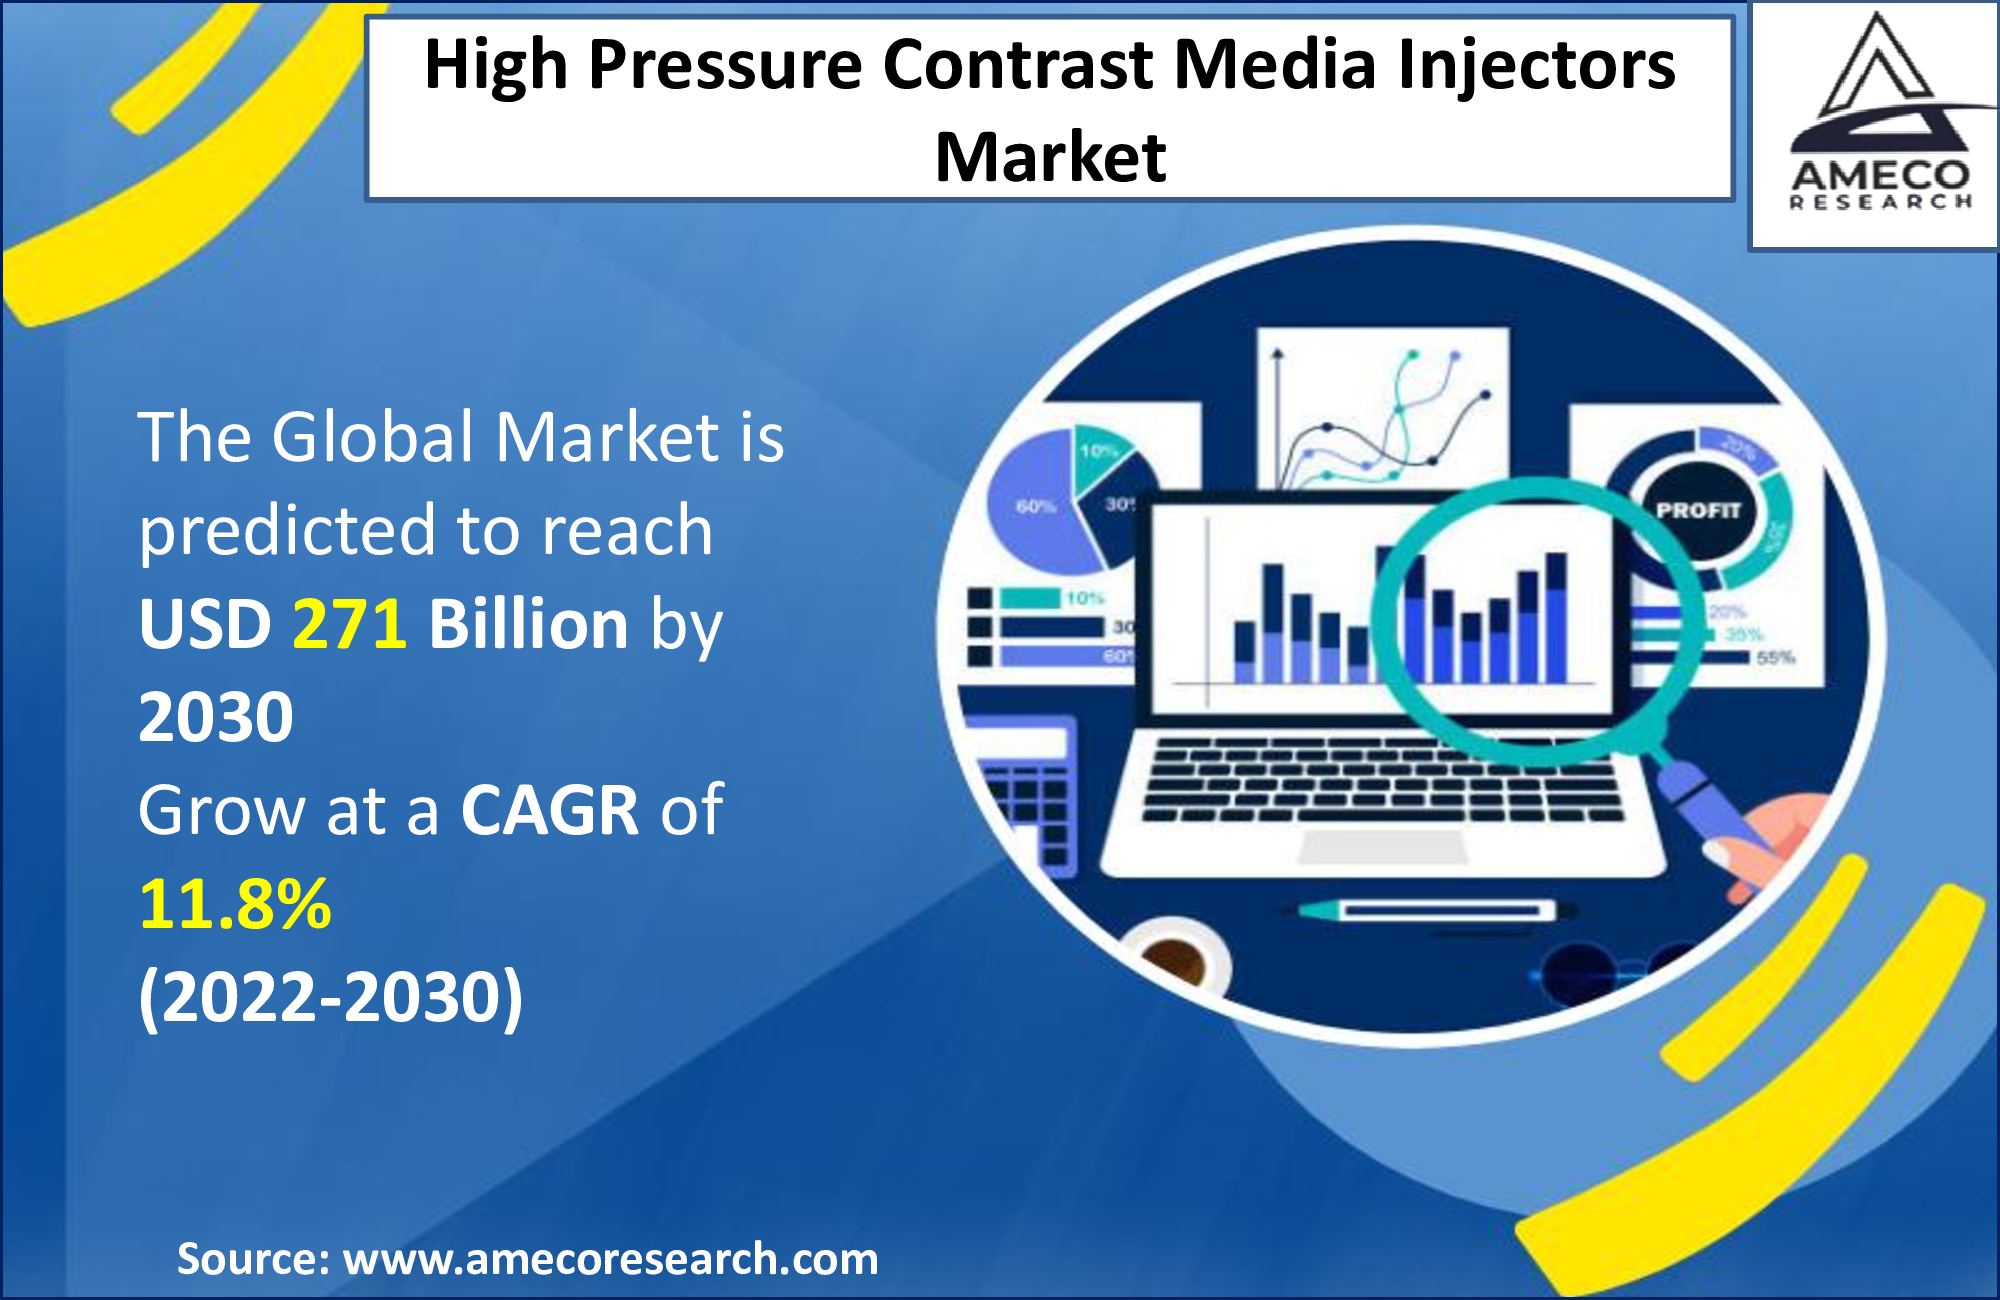 High Pressure Contrast Media Injectors Market